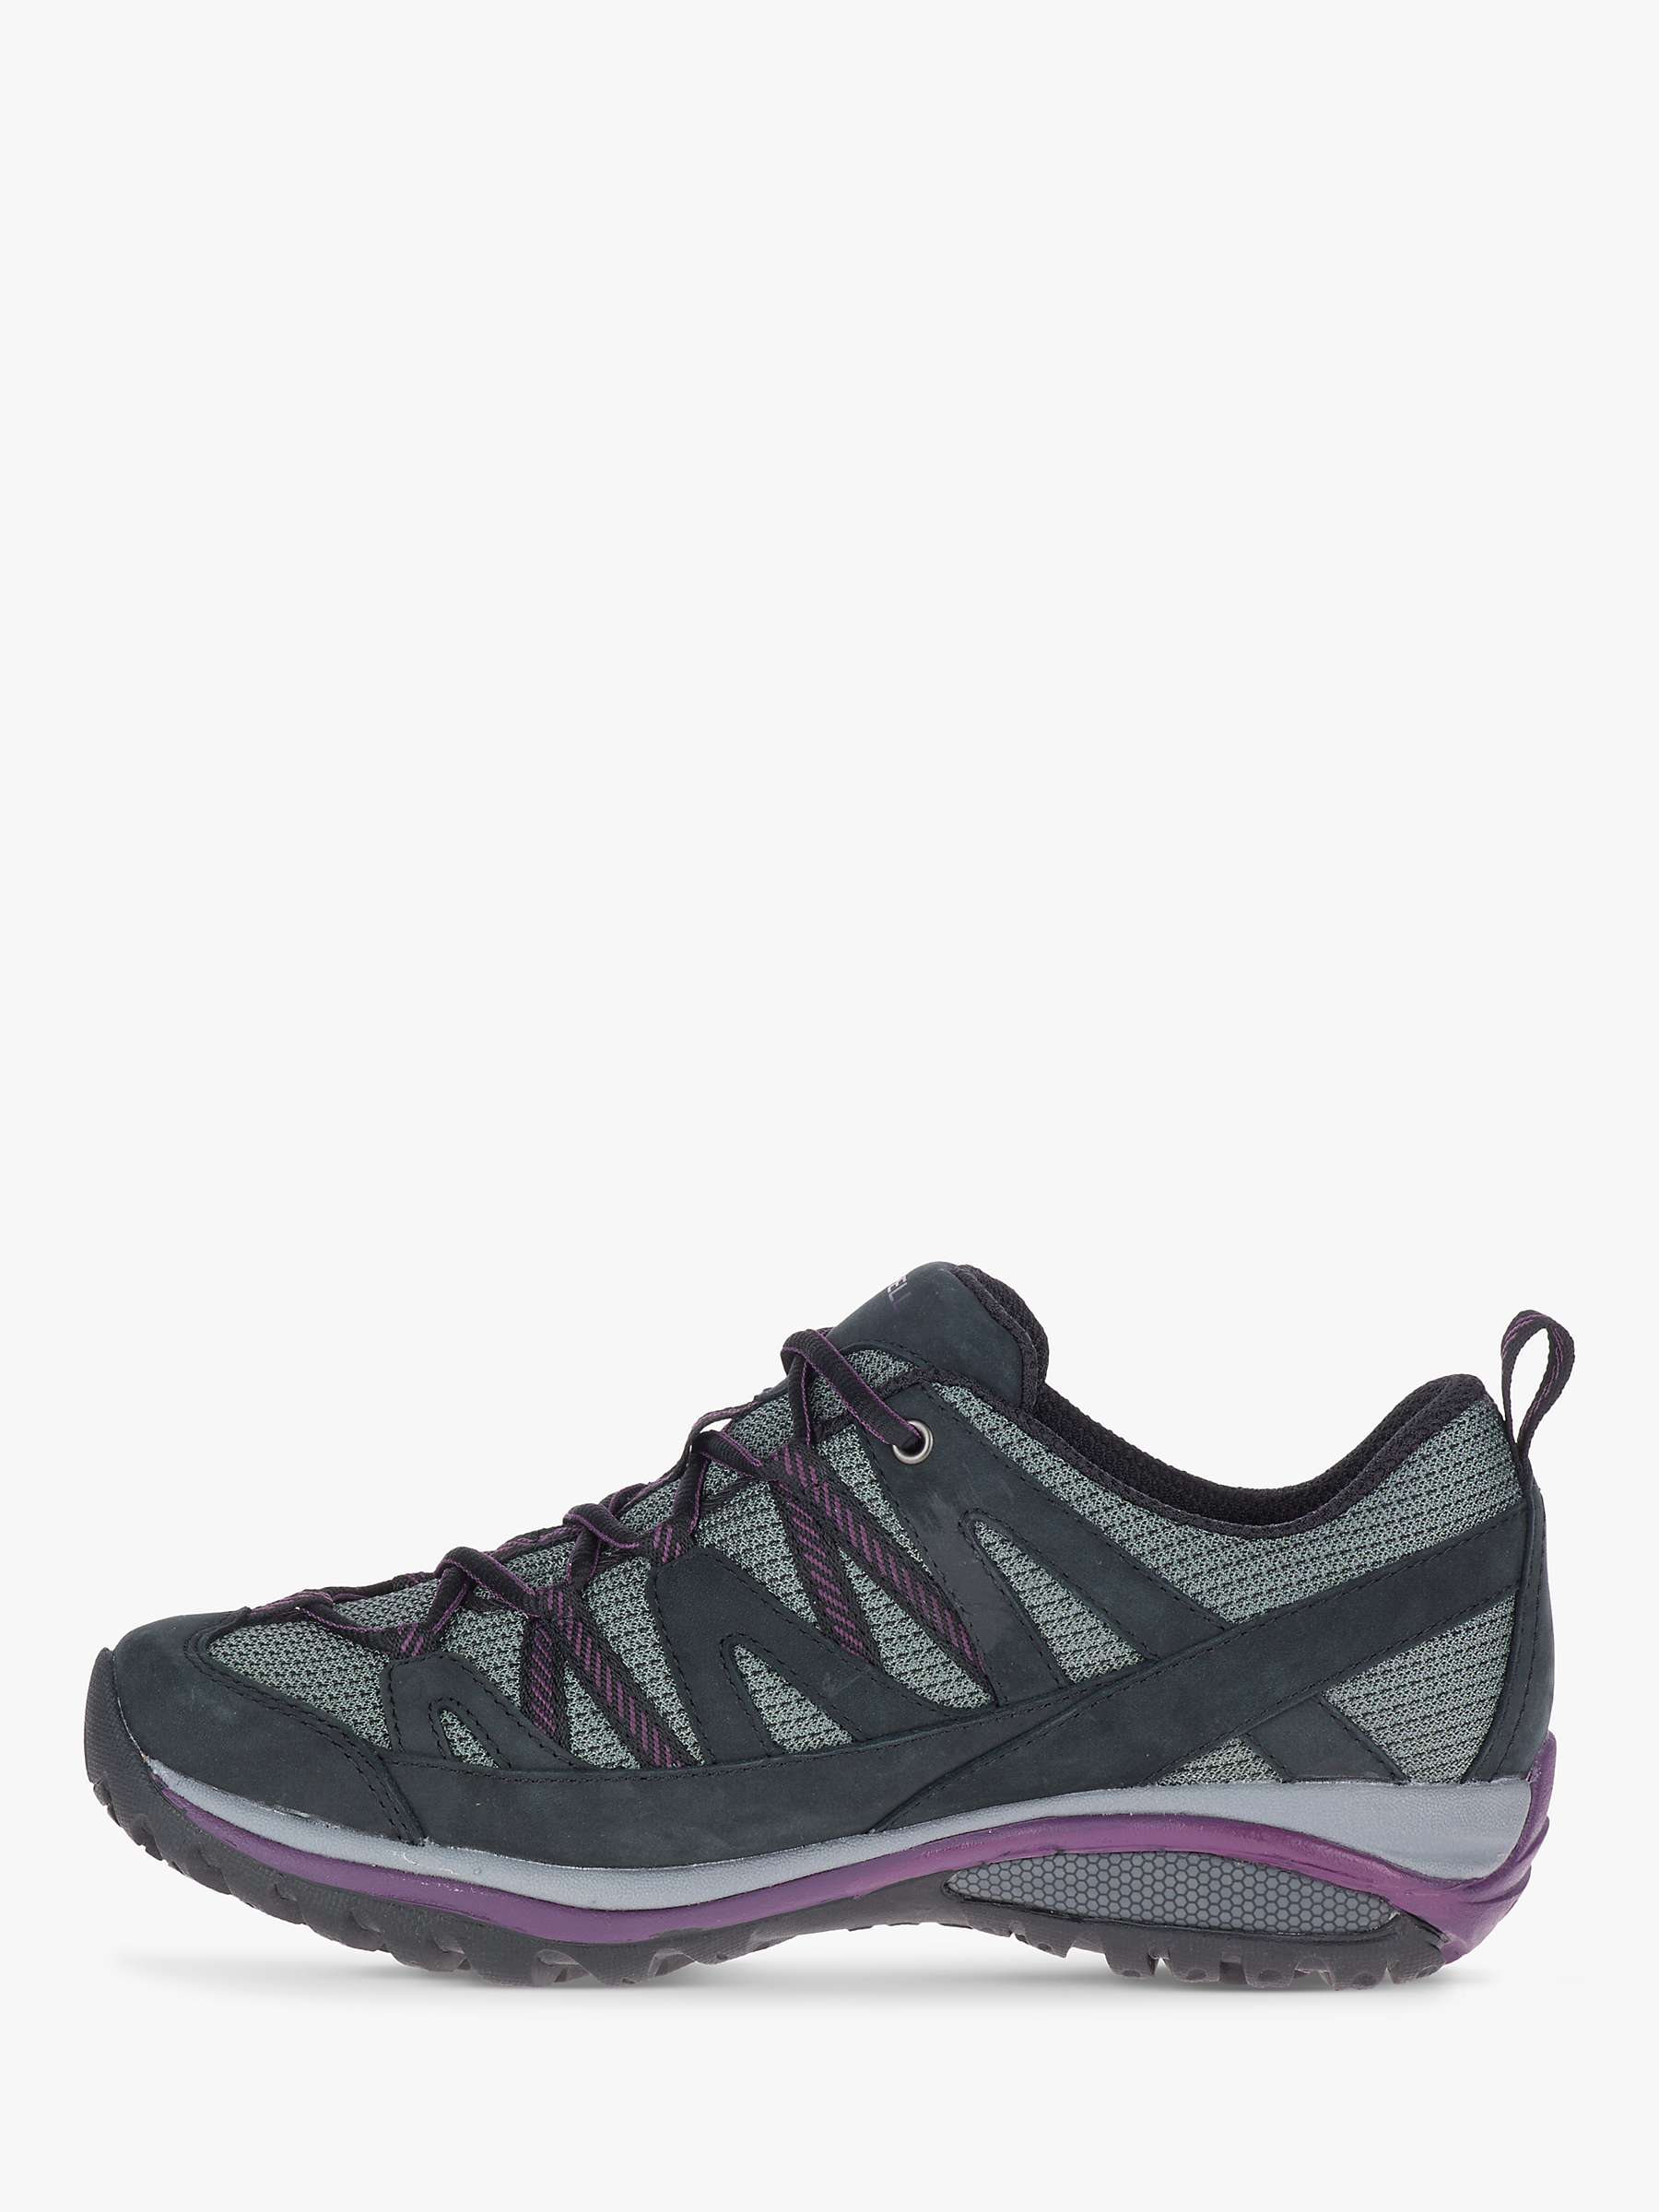 Buy Merrell Siren Sport Women's Waterproof Gore-Tex Walking Shoes, Black/Blackberry Online at johnlewis.com